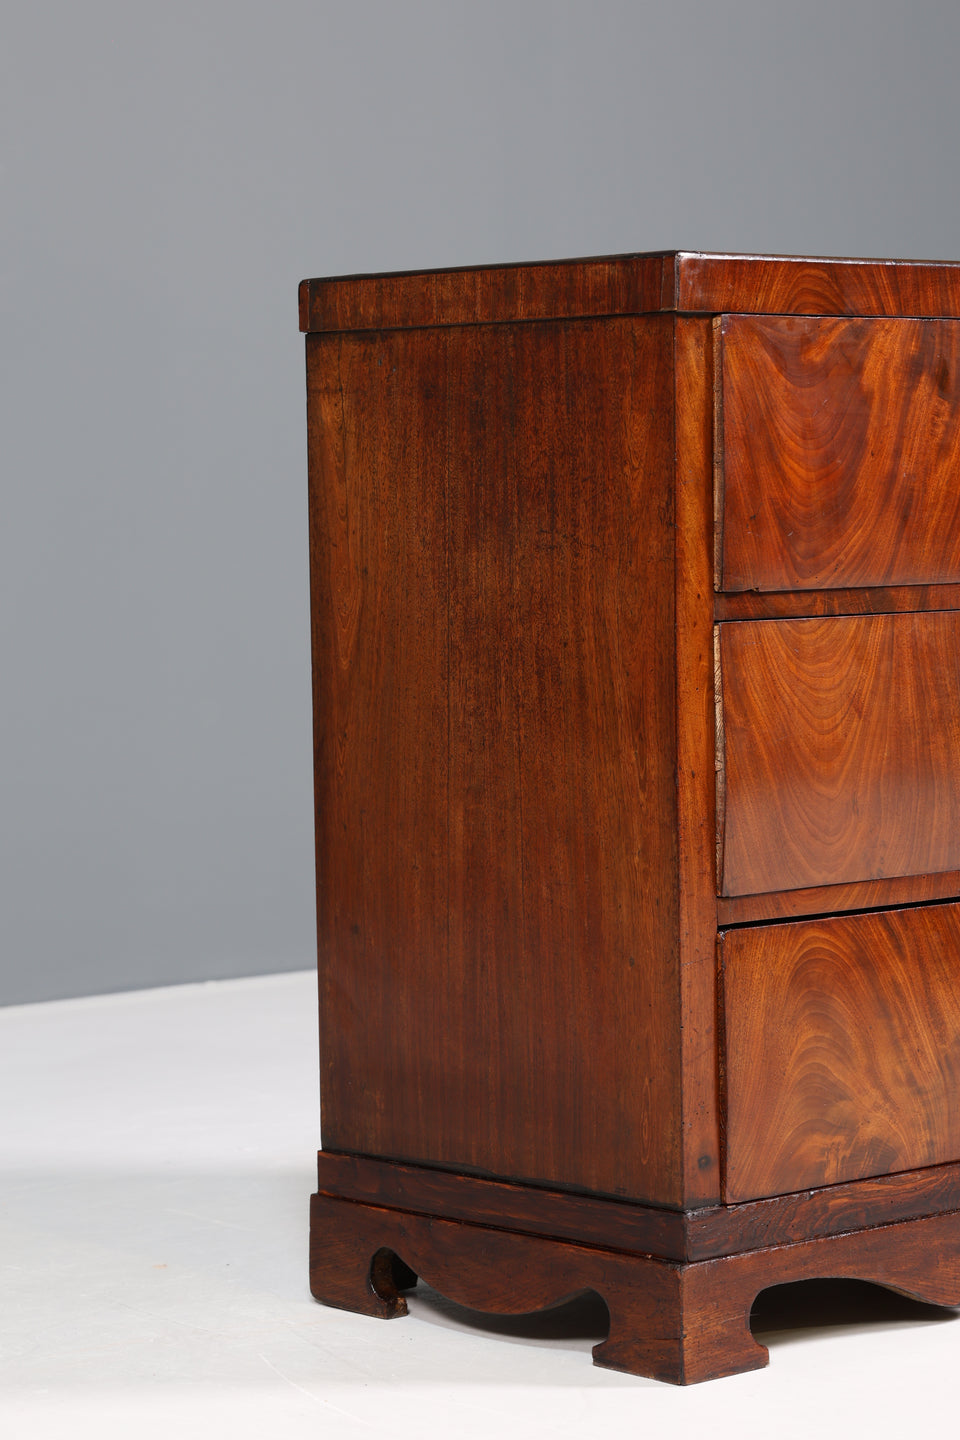 Wunderschöne Original Biedermeier Kommode Antik echt Holz Sideboard um 1860